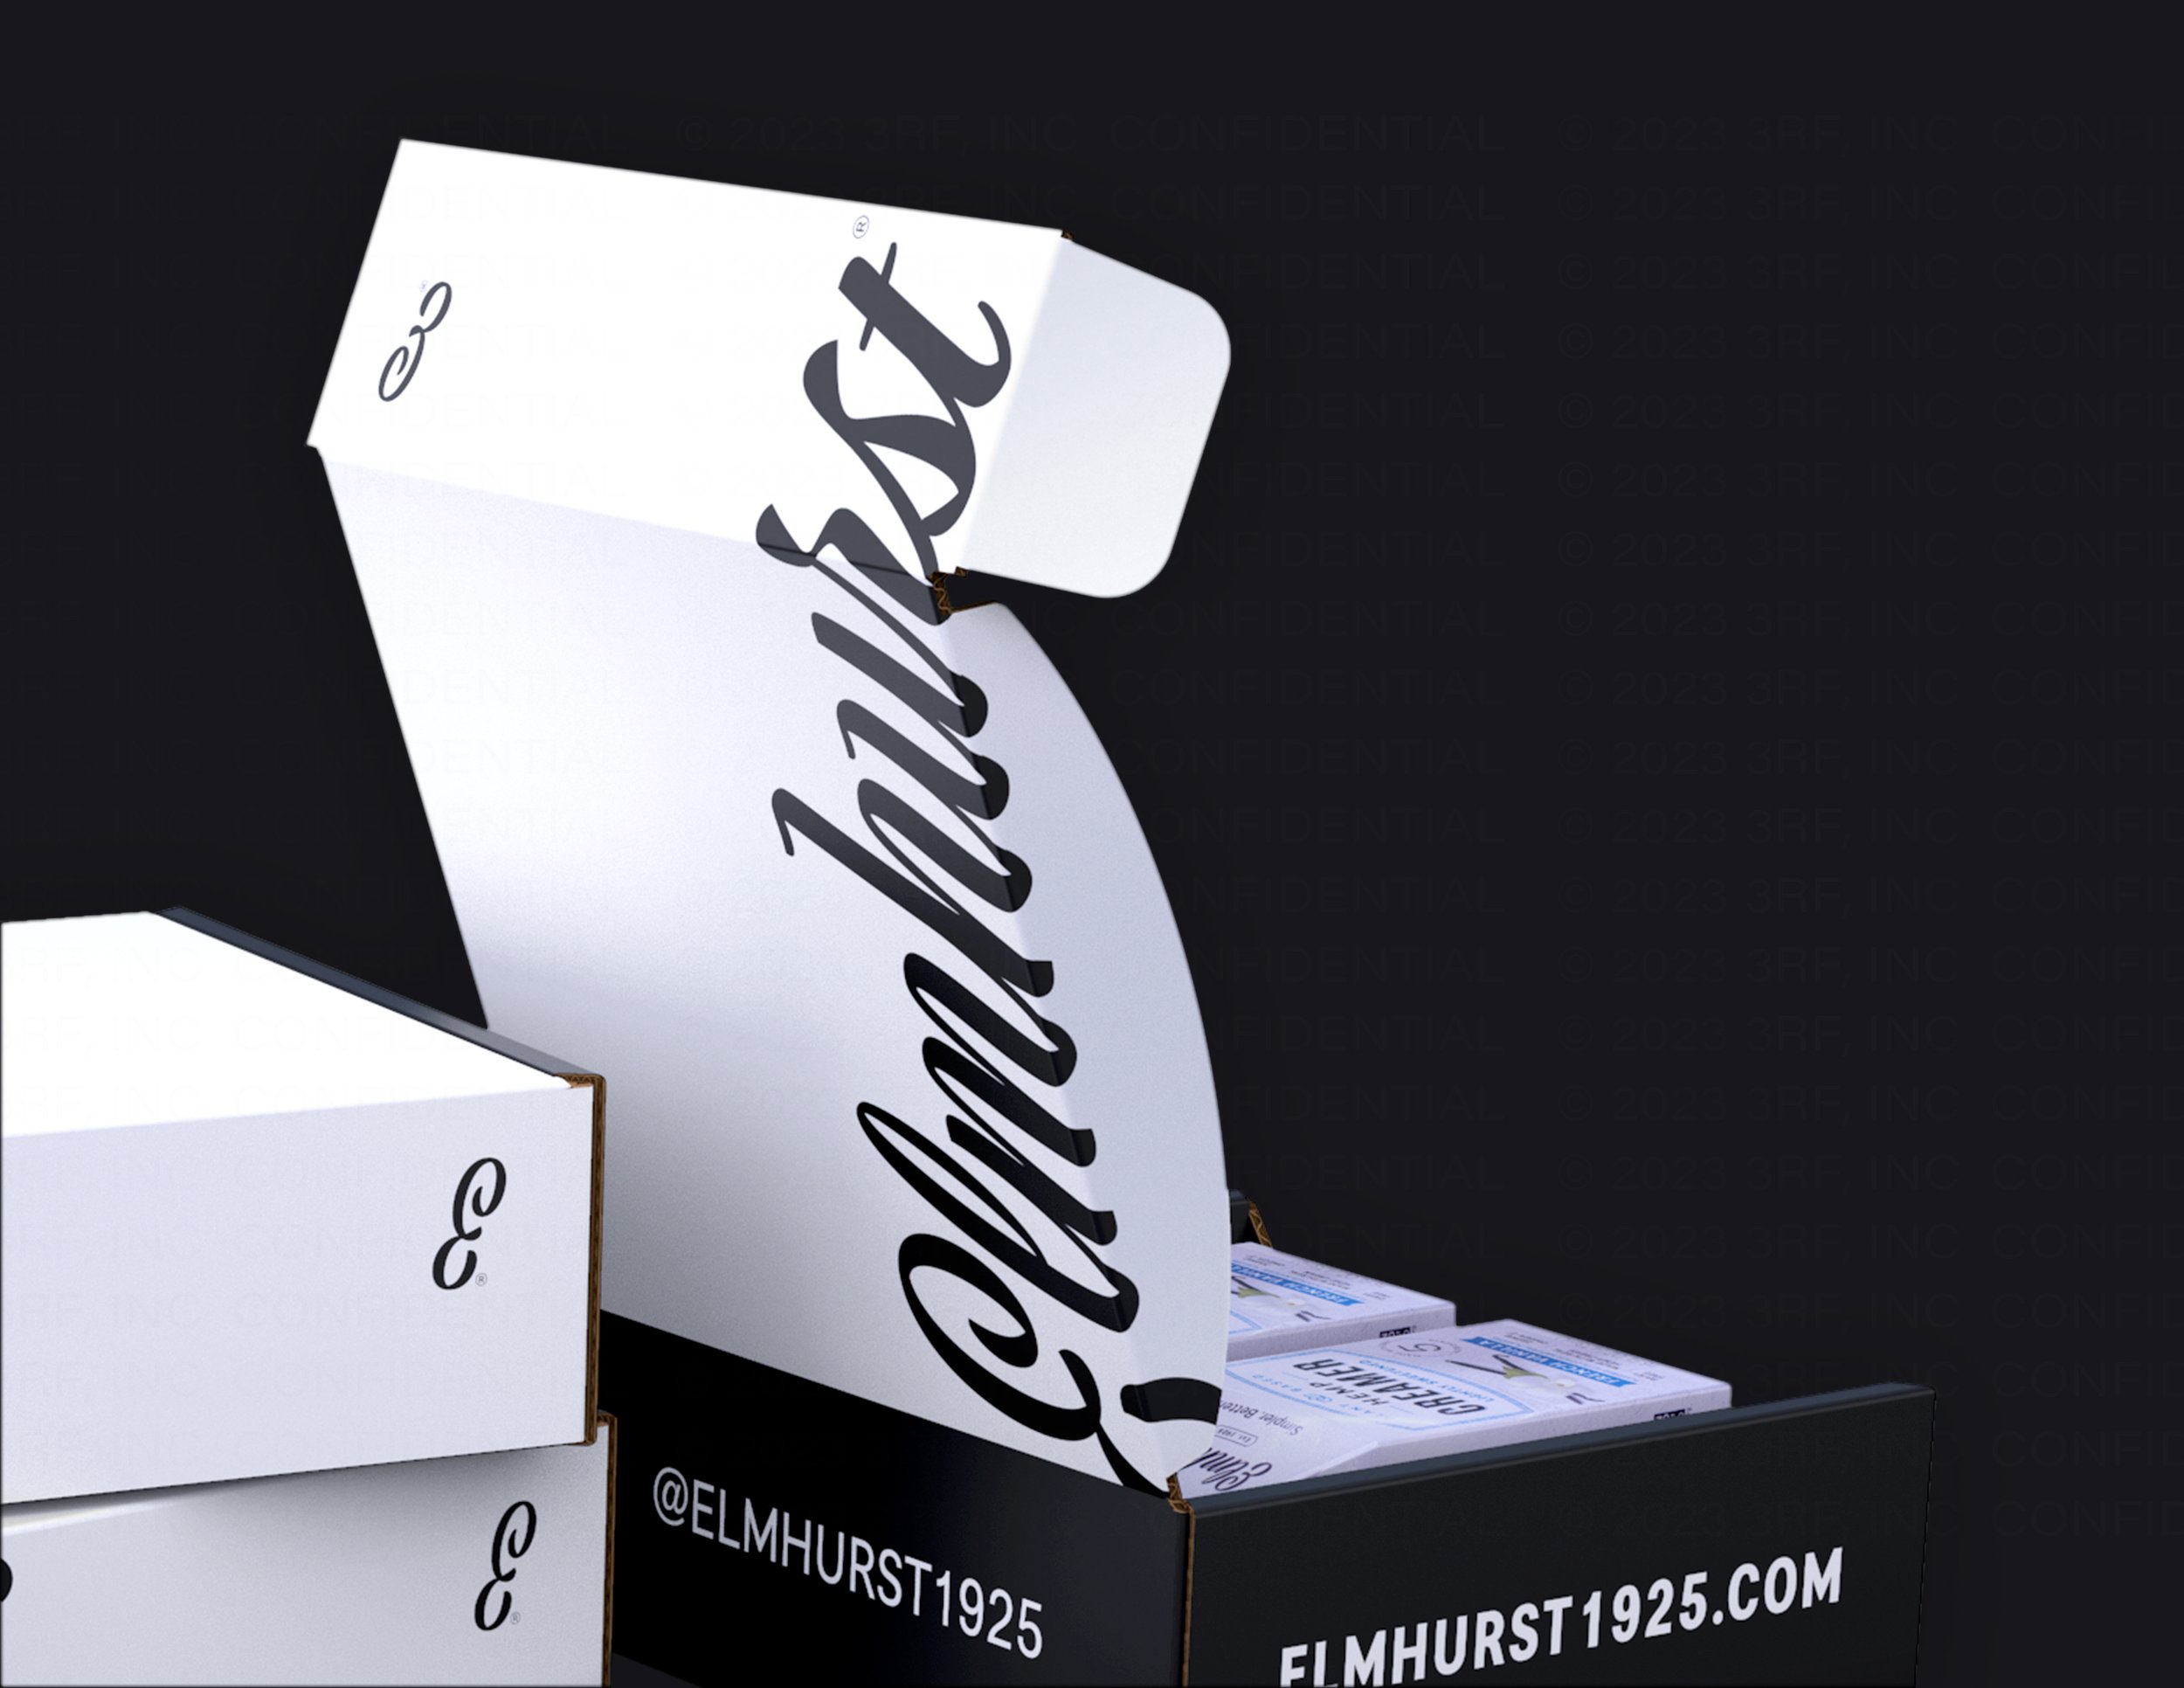 Elmhurst - E-Commerce Packaging